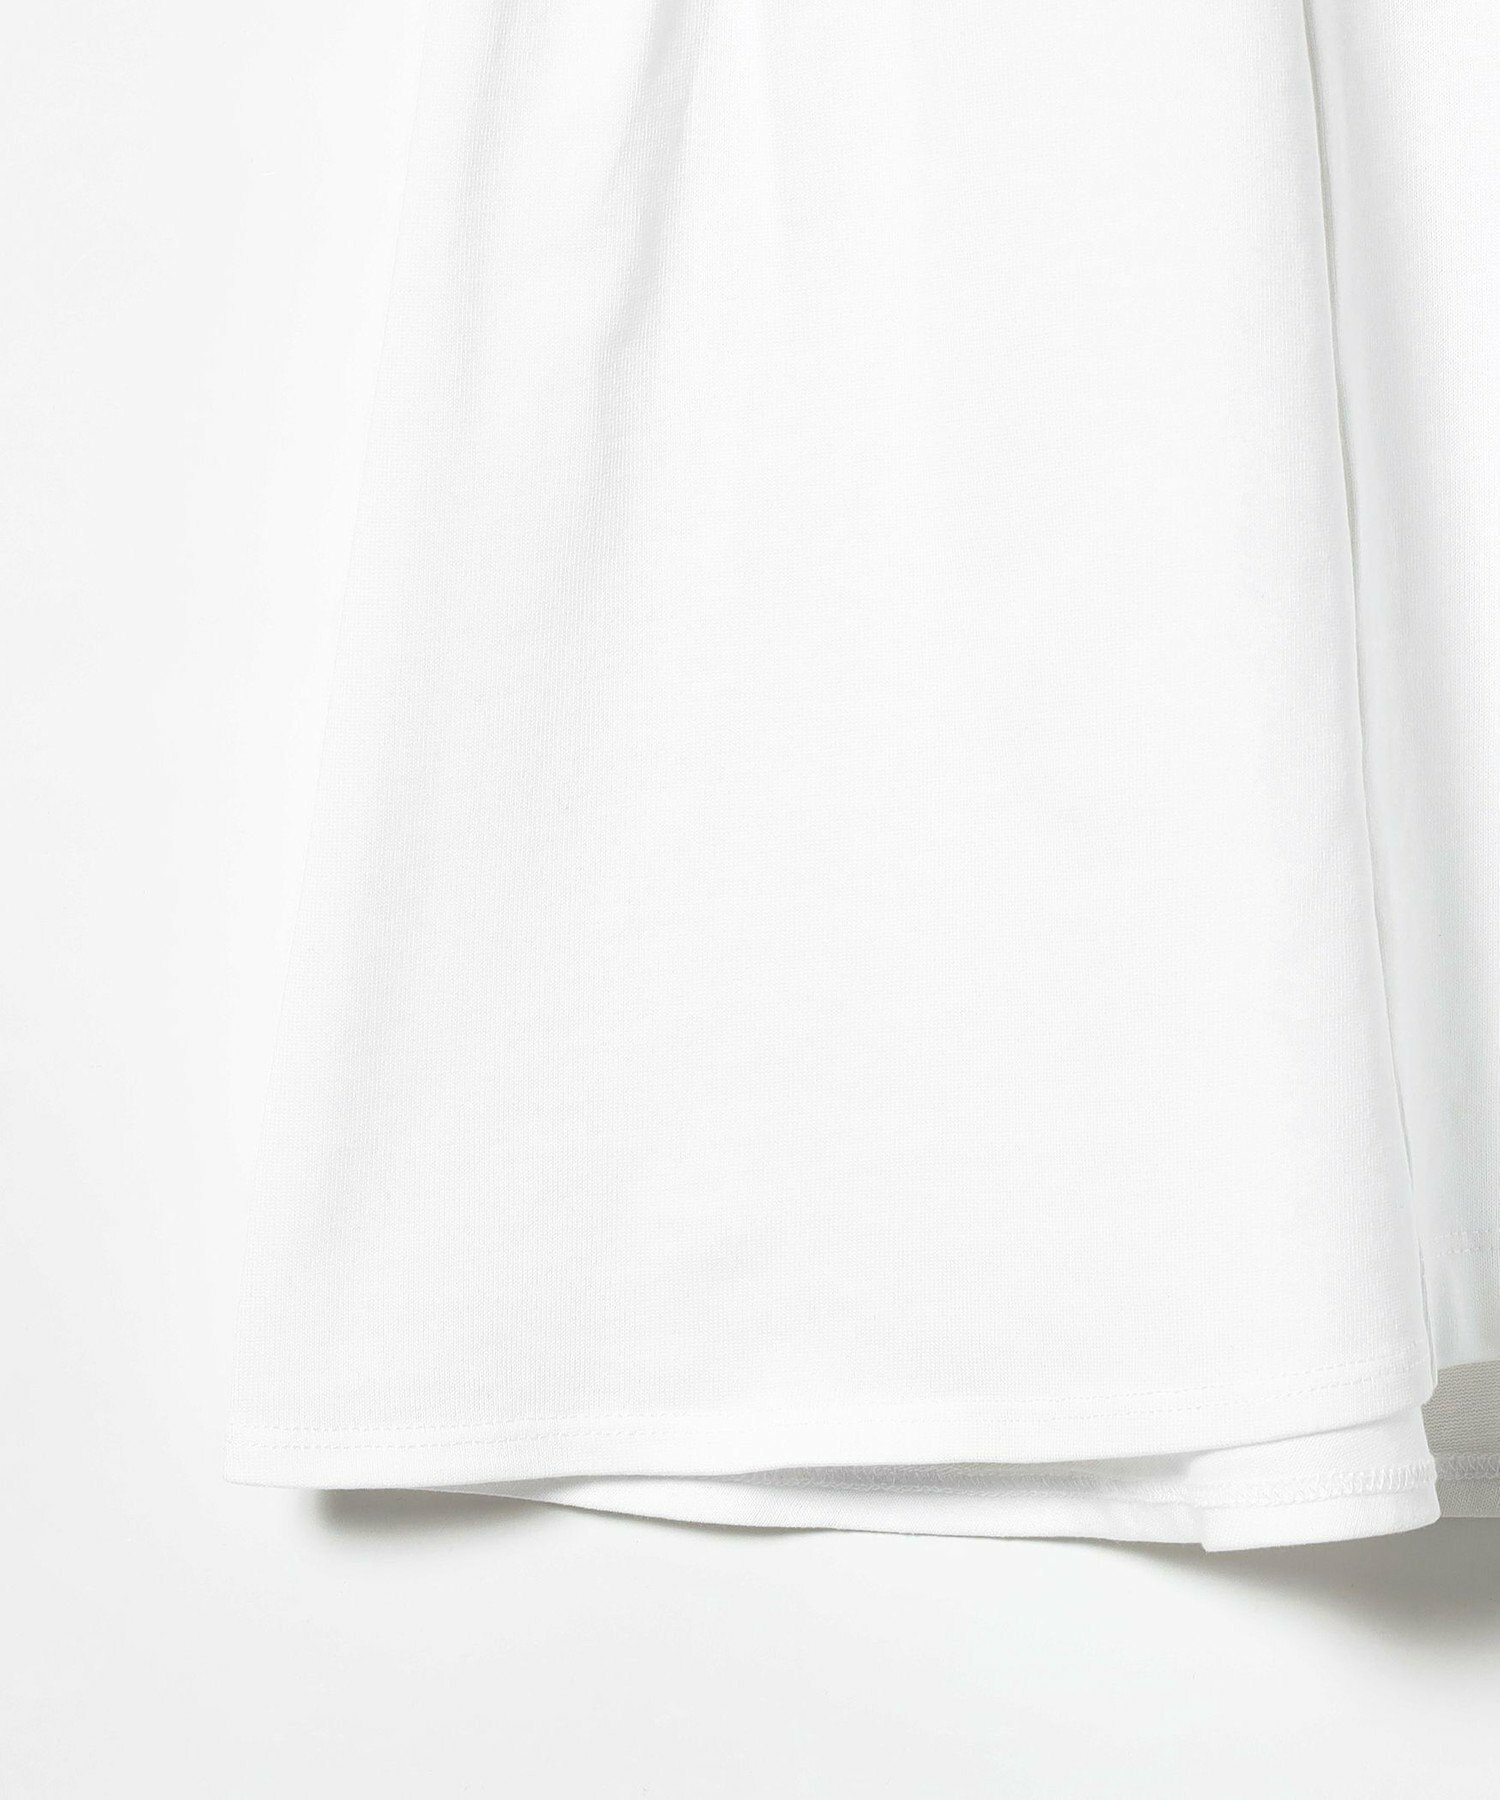 【洗濯機OK】Ray BEAMS / バックギャザー クルーネック Tシャツ 美シルエット 24SS イージーケア